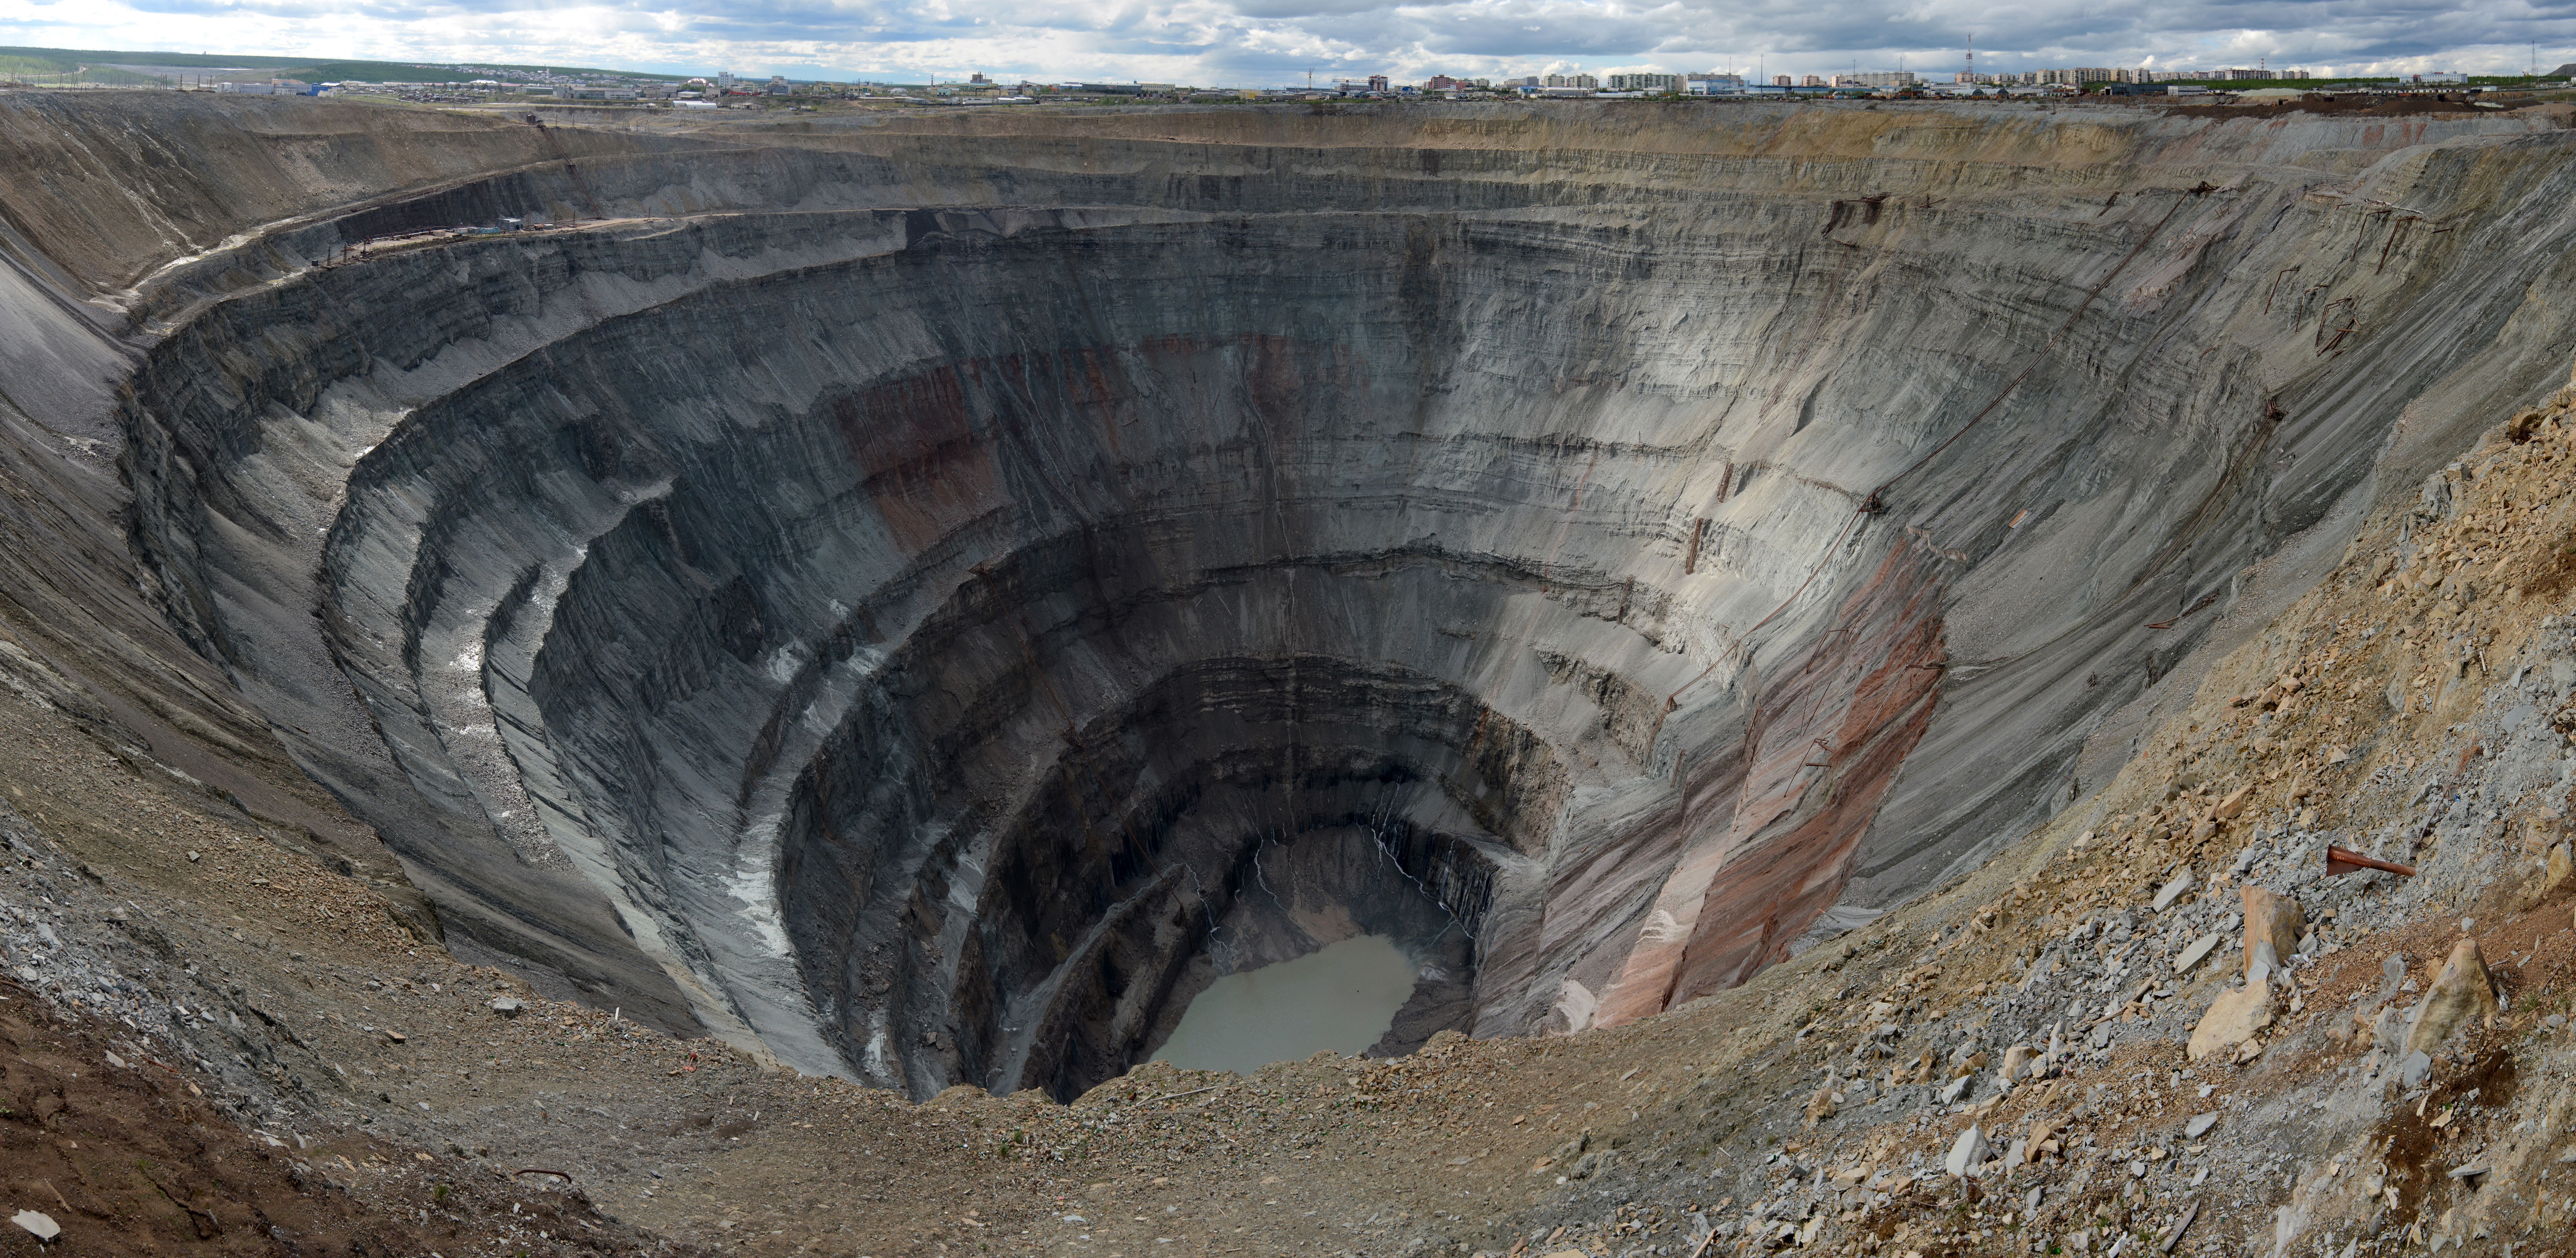 Image : Staselnik, La mine Mir, mine de kimberlite et de diamant à ciel ouvert située à Mirny, en Yakoutie (Extrême-Orient russe), 2014